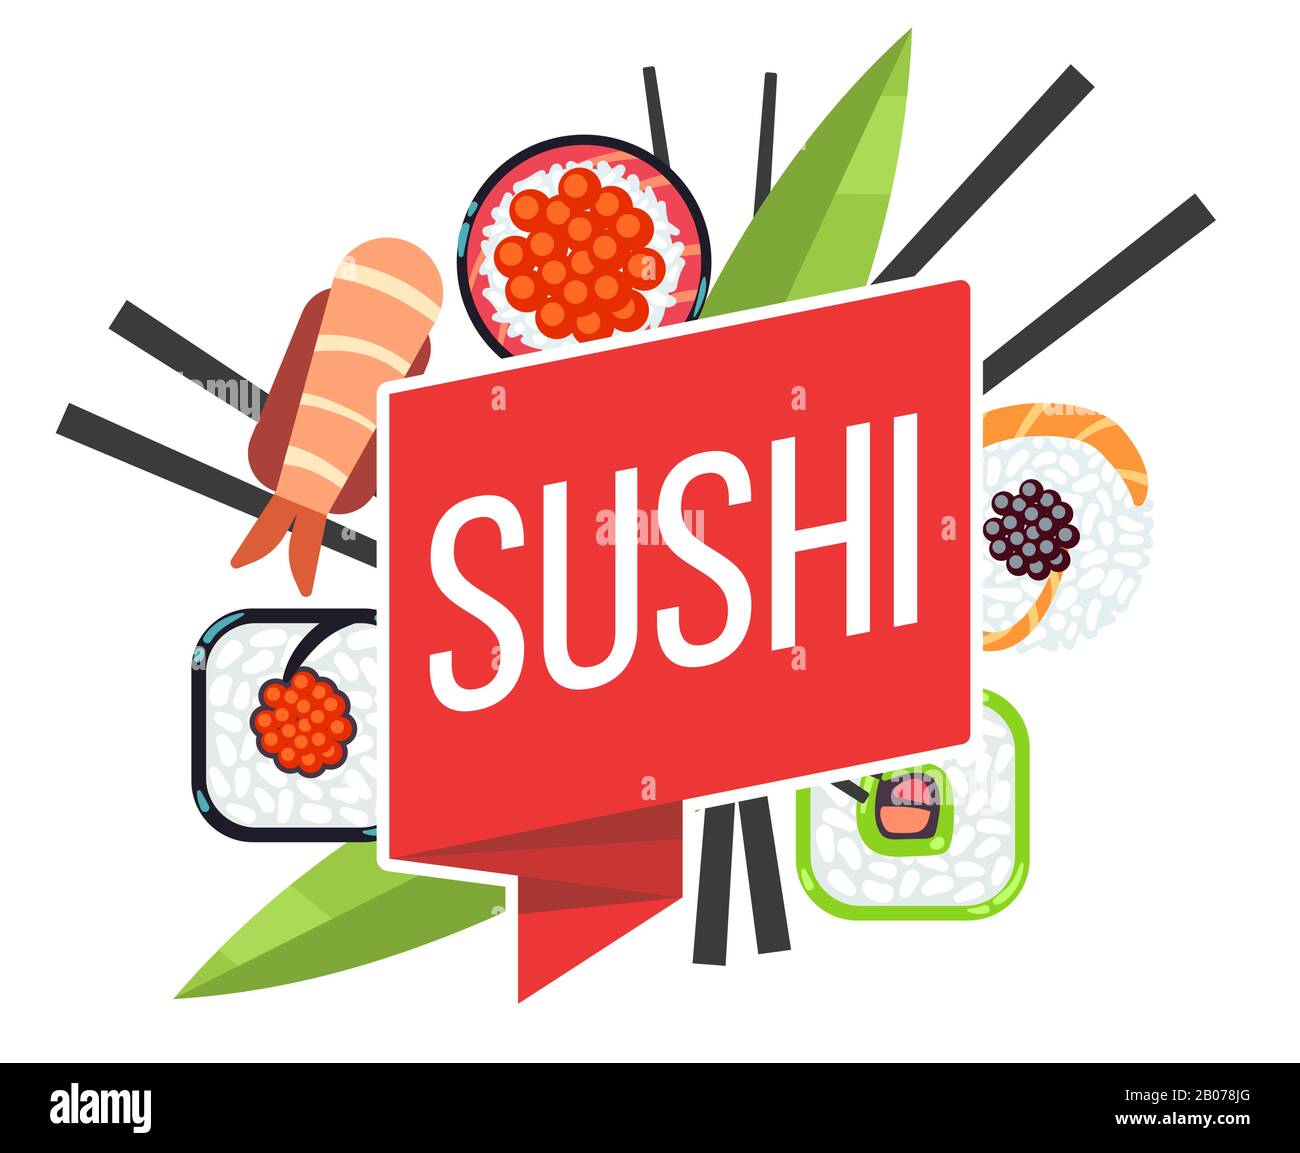 Japanische Vorlage für Vektorgrafiken im Sushi-Menü. Emblem mit Lebensmitteln und Farbband Stock Vektor